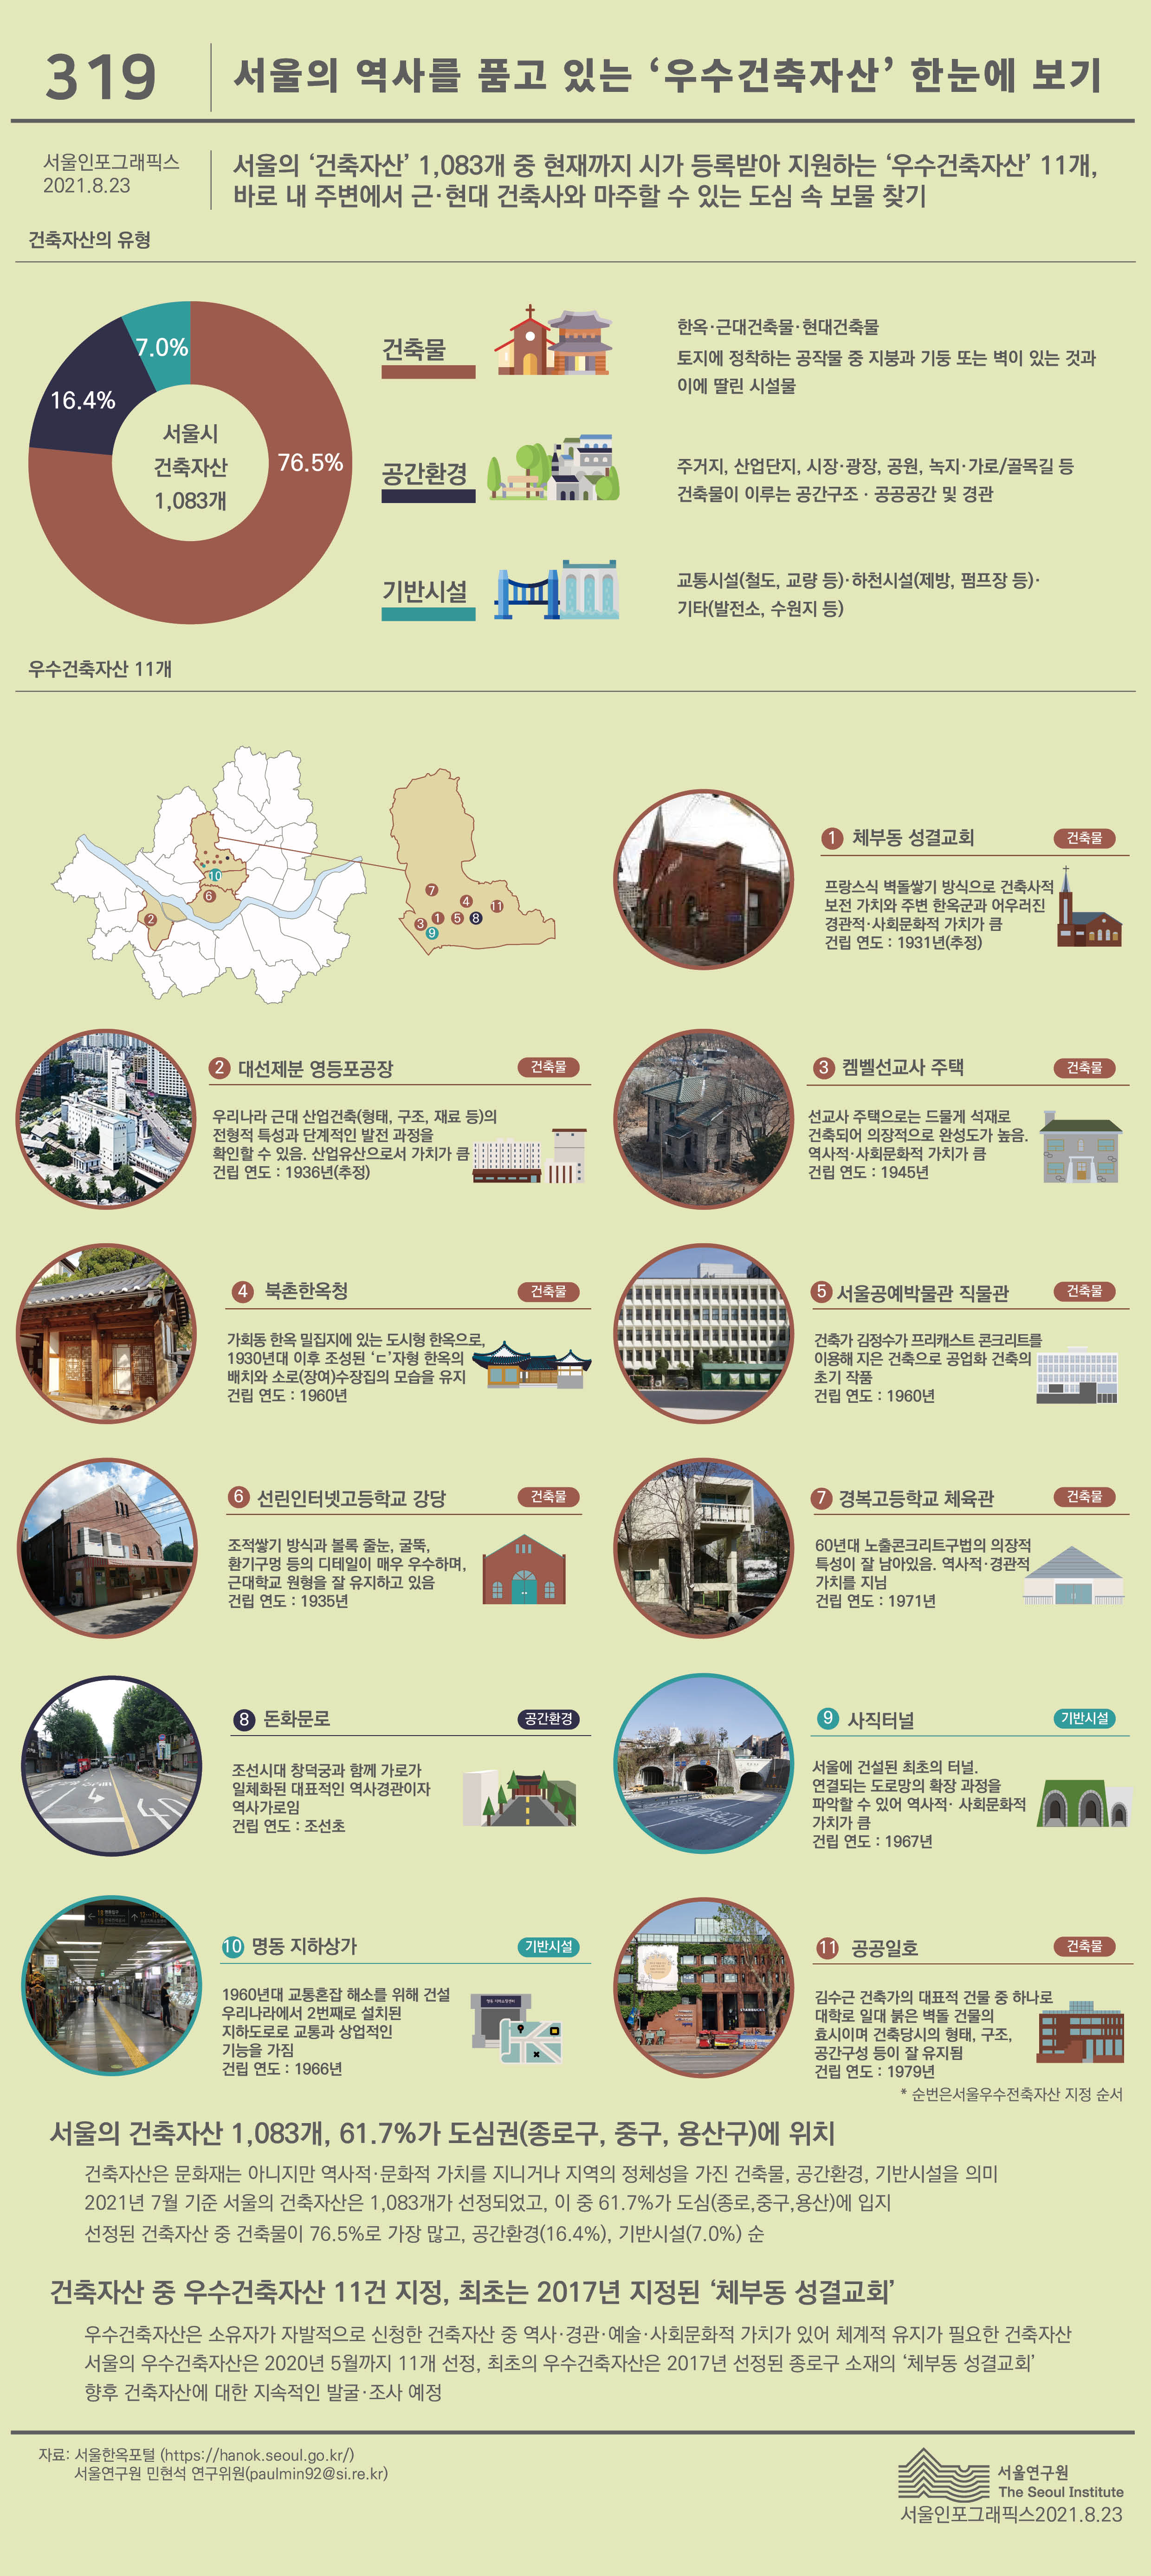 서울의 역사를 품고 있는 ‘우수건축자산’ 한눈에 보기 서울인포그래픽스 제319호 2021년 8월 23일 건축자산은 문화재는 아니지만 역사적·문화적 가치를 지니거나 지역의 정체성을 가진 건축물, 공간환경, 기반시설을 의미  2021년 7월 기준 서울의 건축자산은 1,083개가 선정되었고, 이 중 61.7%가 도심(종로,중구,용산)에 입지로 정리될 수 있습니다. 인포그래픽으로 제공되는 그래픽은 하단에 표로 자세히 제공됩니다.